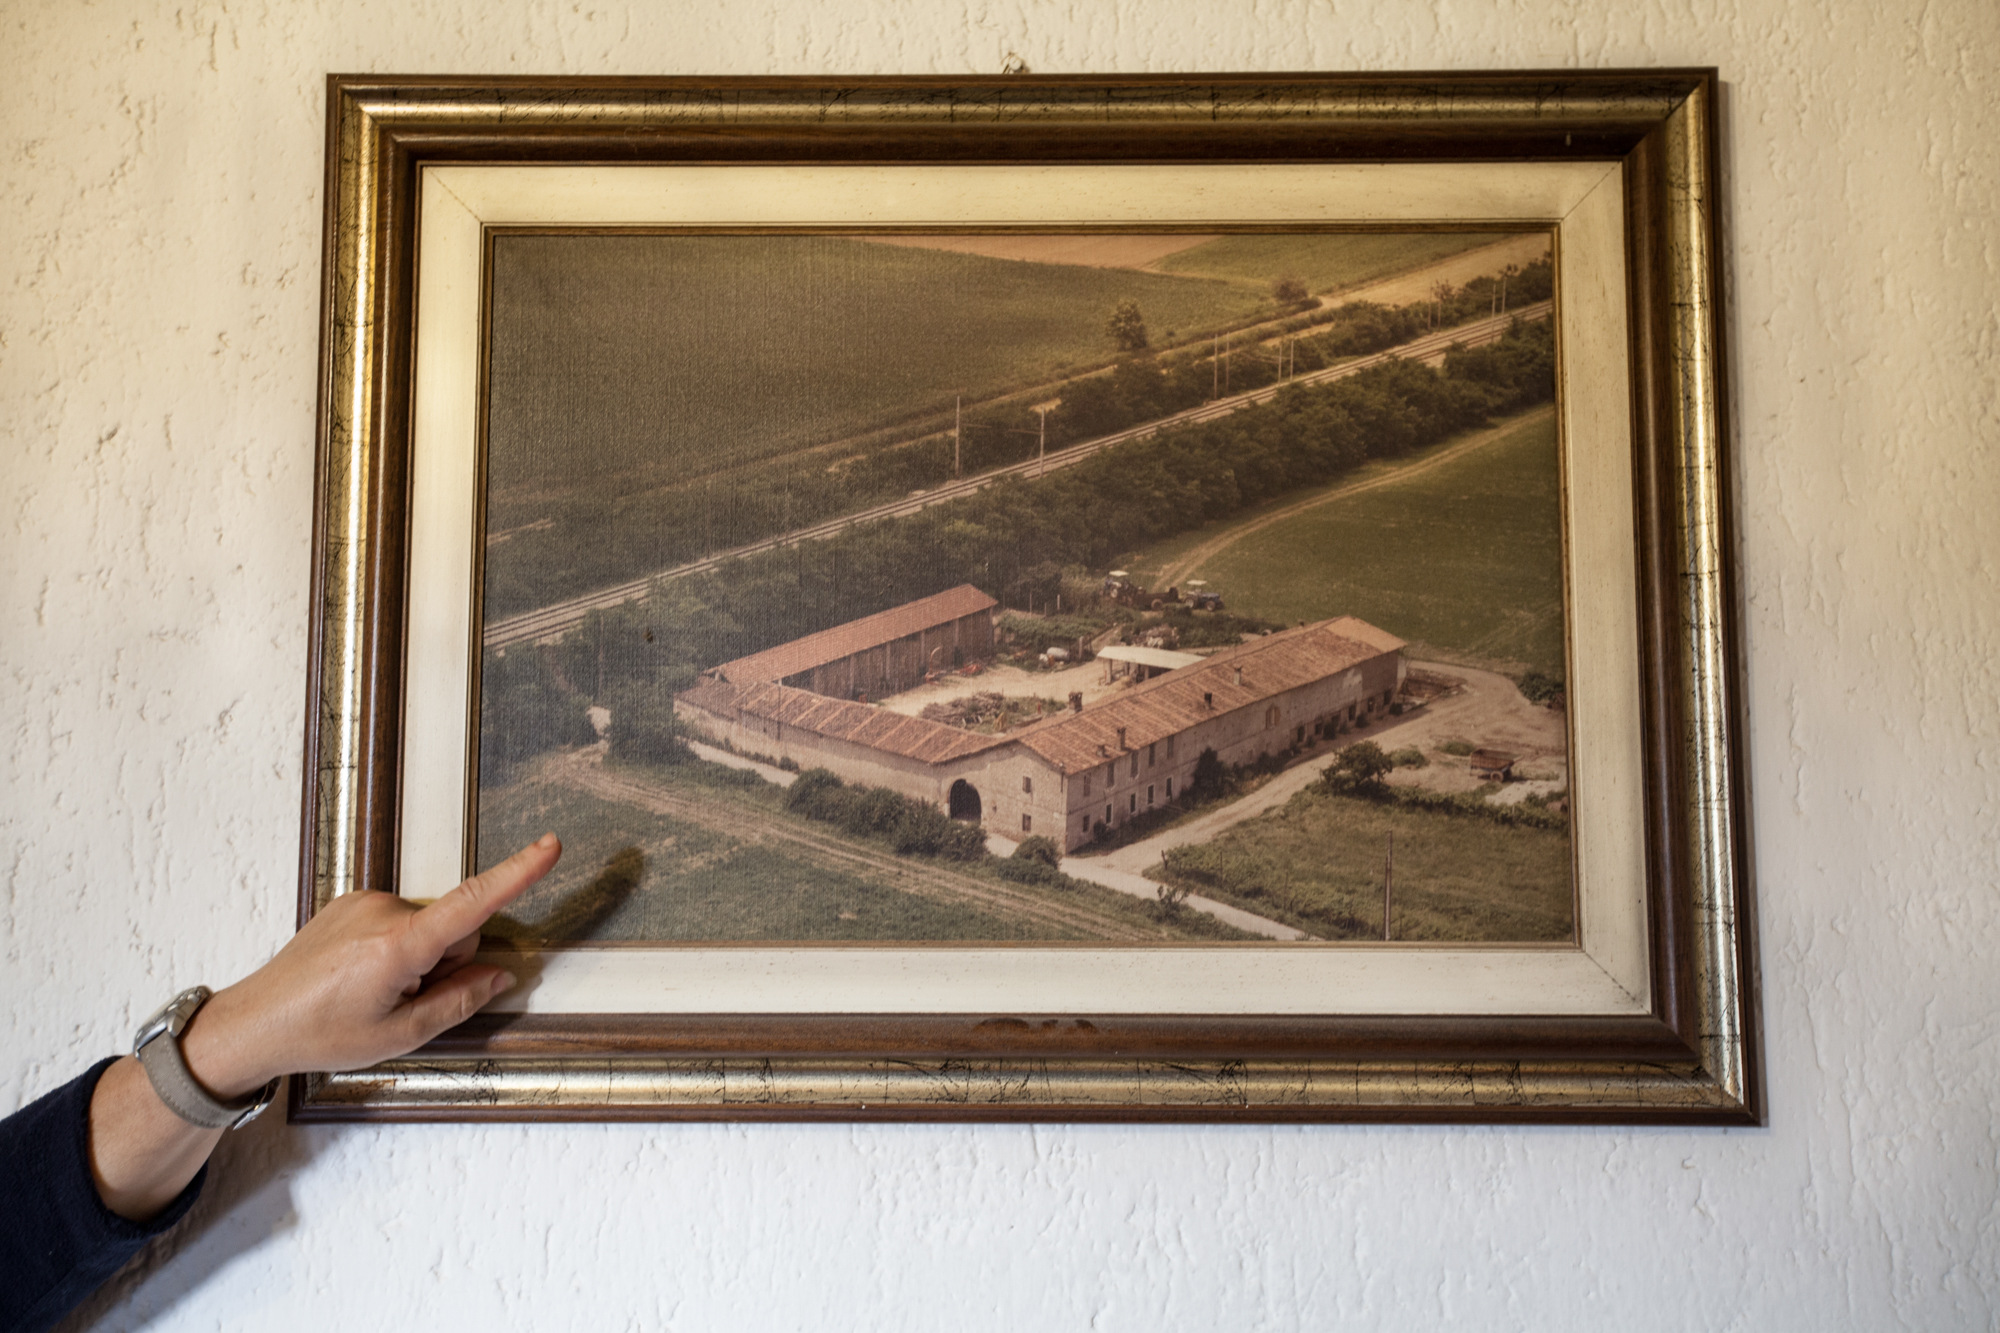  La moglie di un contadino mostra una vecchia foto aerea della propria cascina e dei campi circostanti.Brescia / Italia. Ottobre 2013 